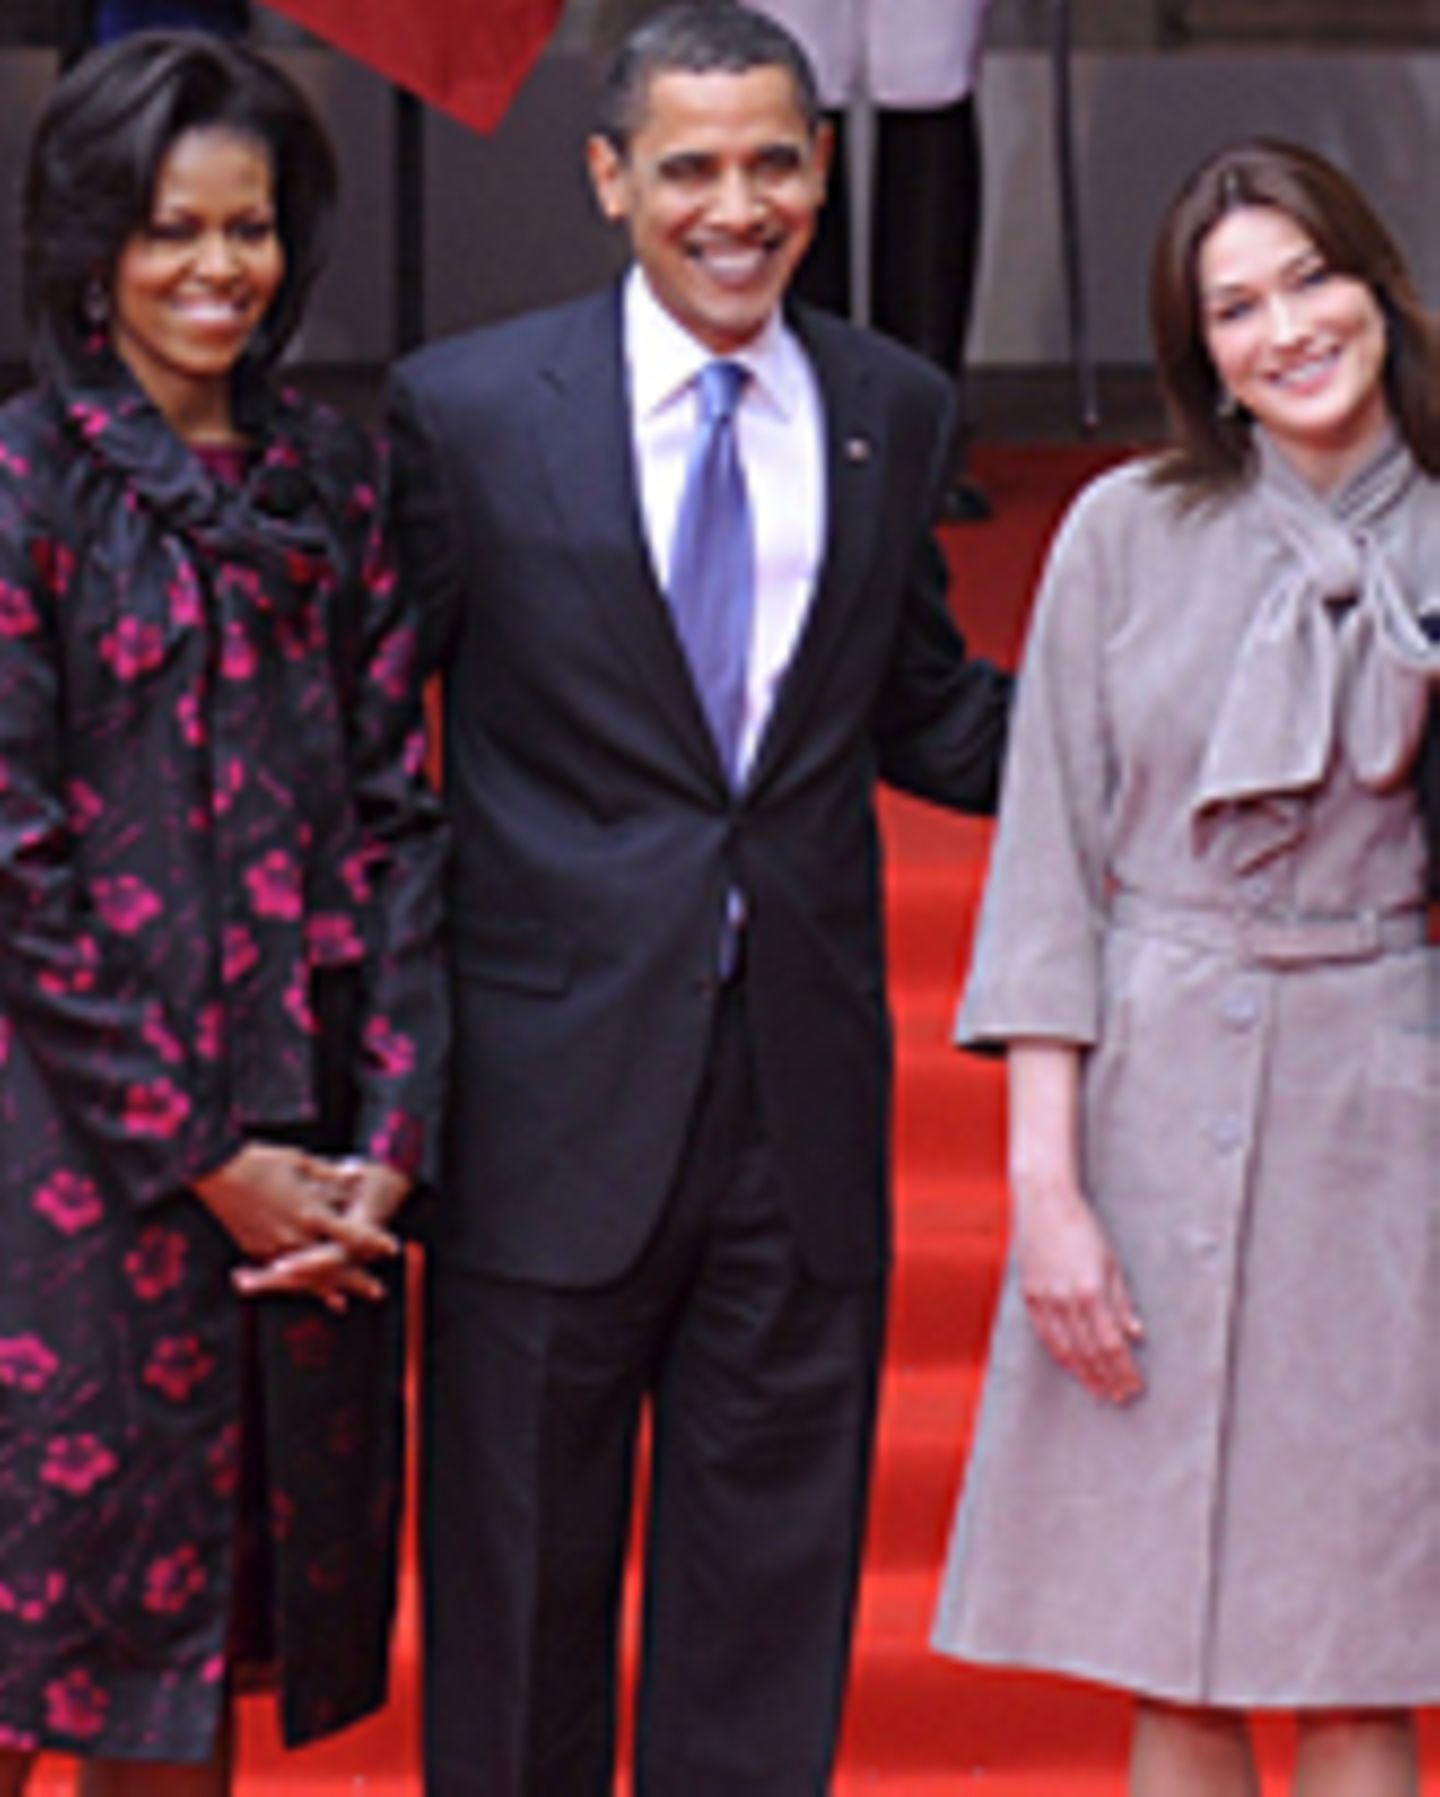 Michelle Obama, Carla Bruni